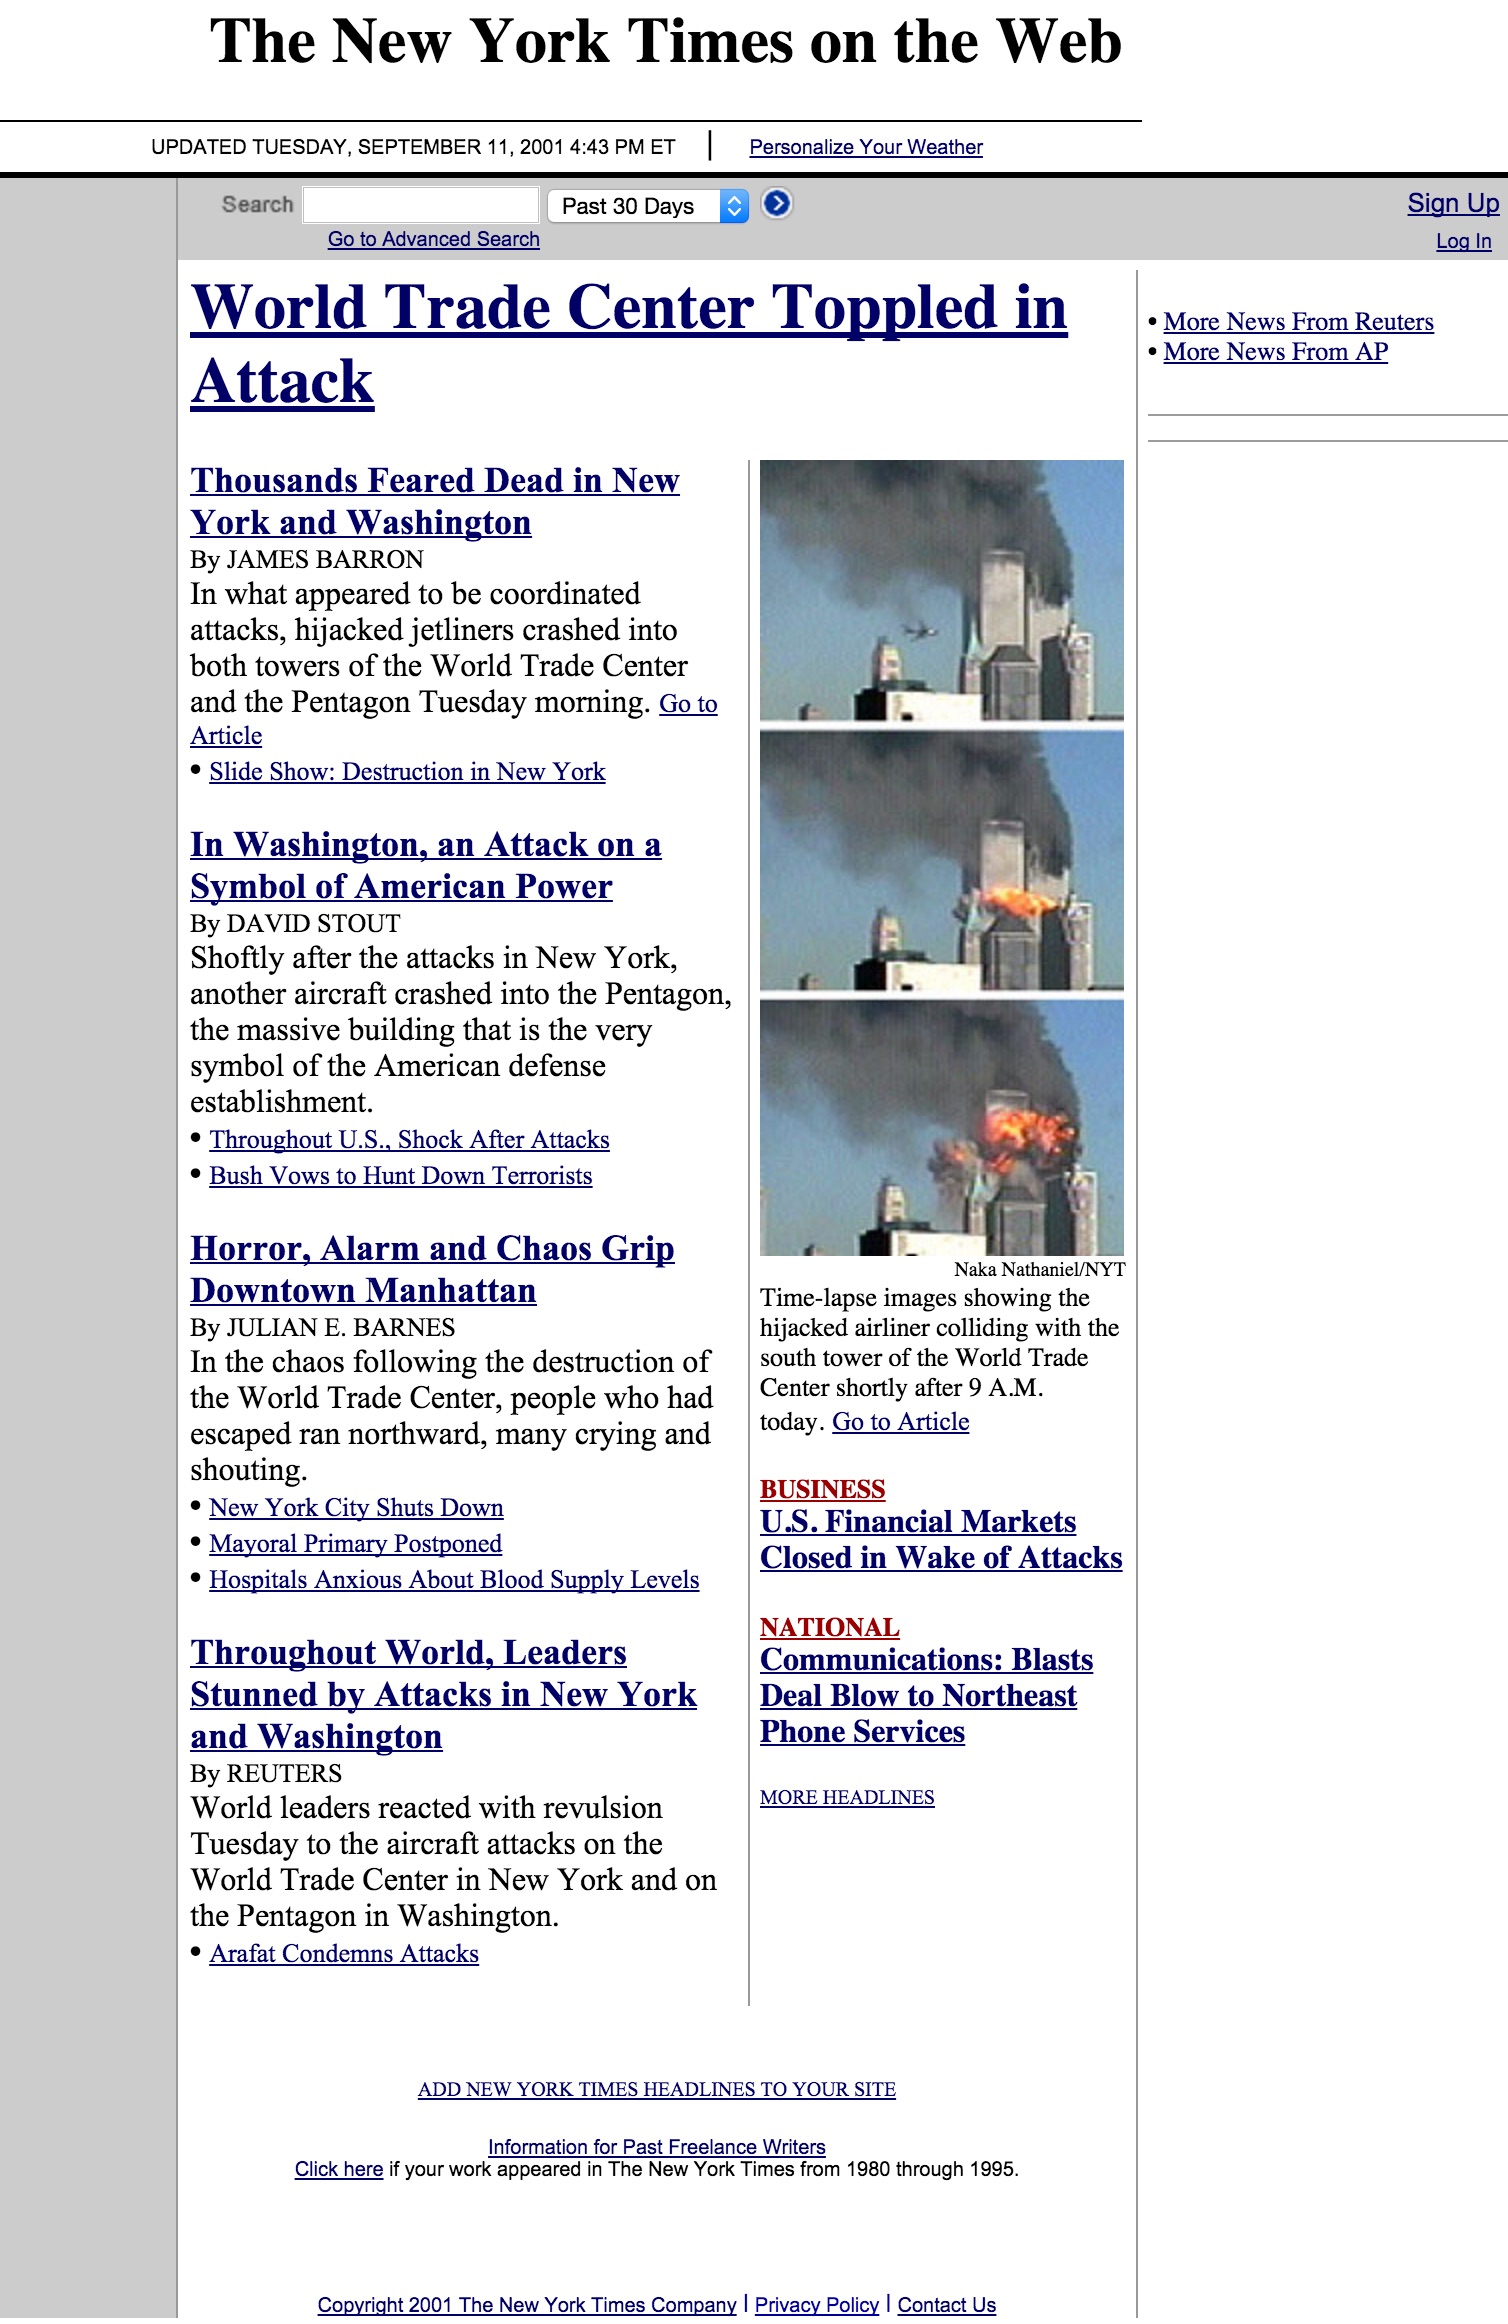 Sept. 11 NYC Terror Attacks (2001)